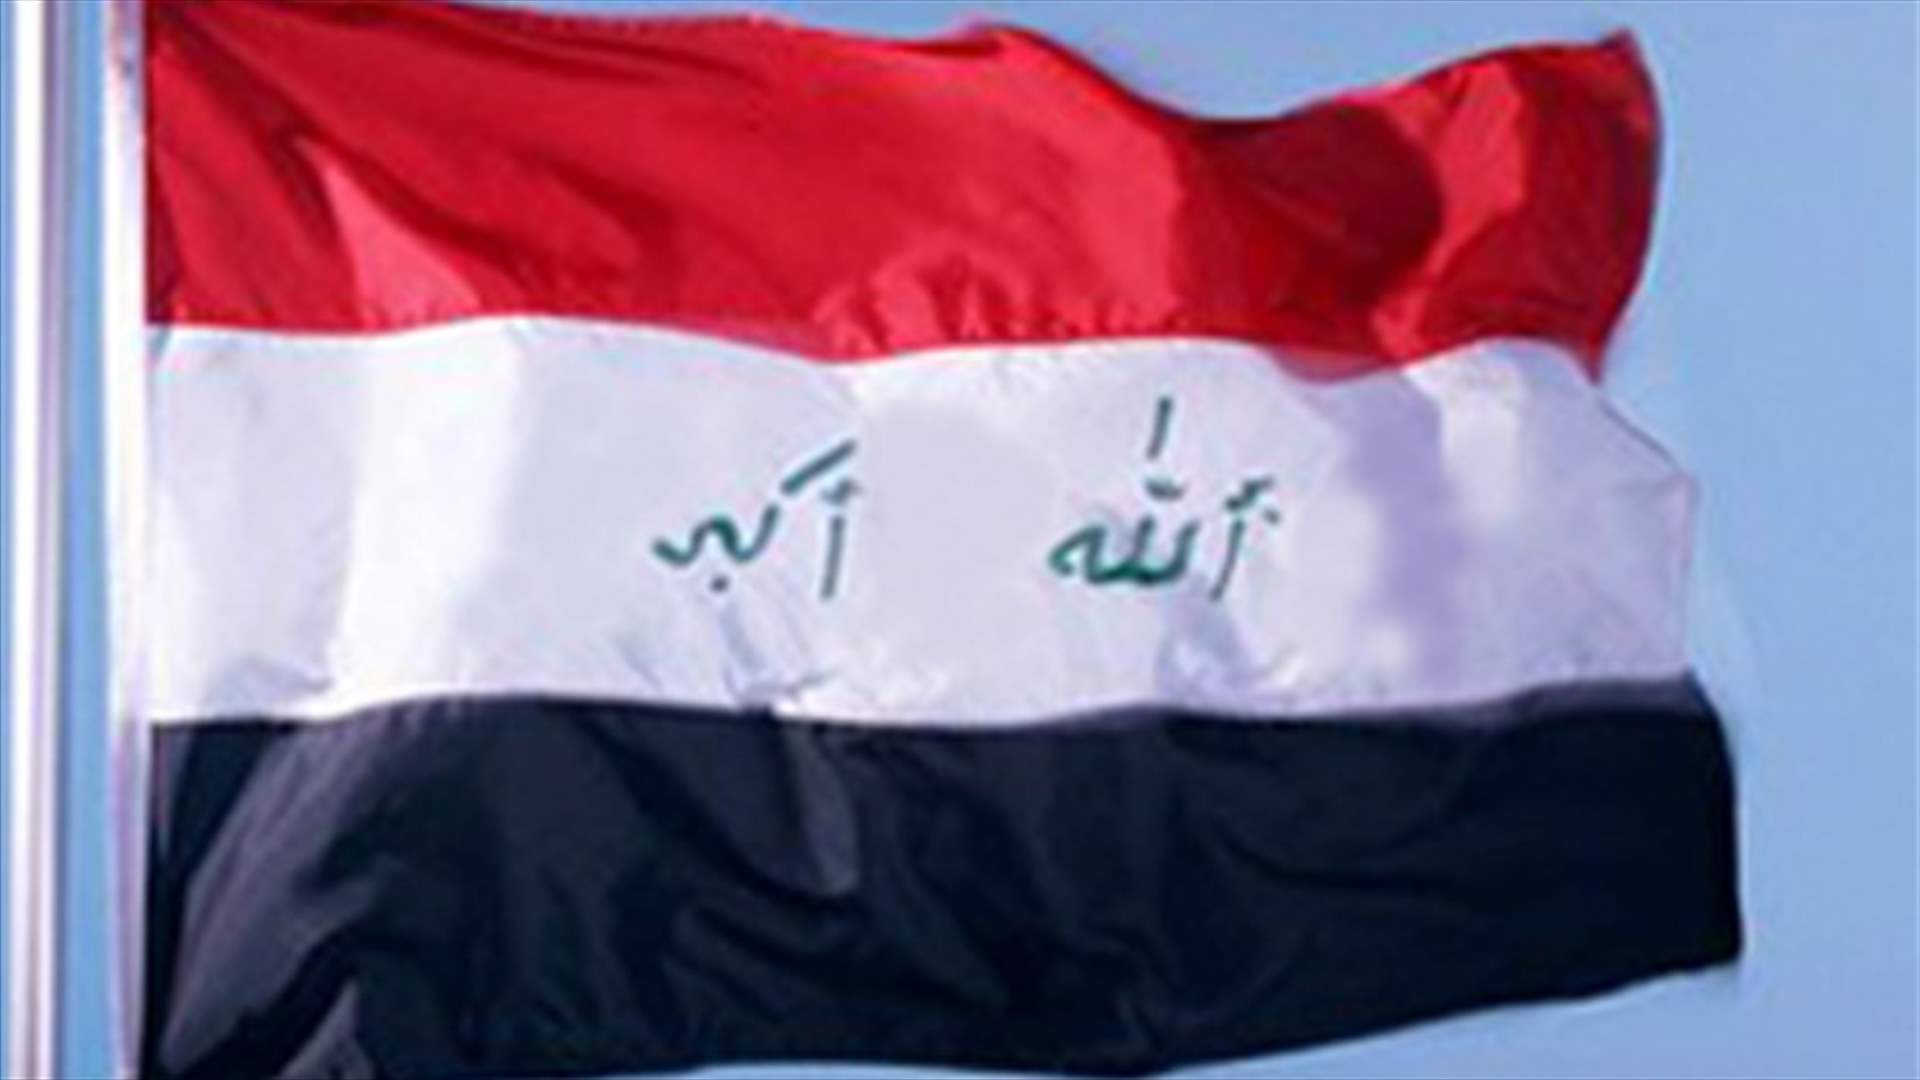 Car bomb kills 2 Iraqis in Baghdad 